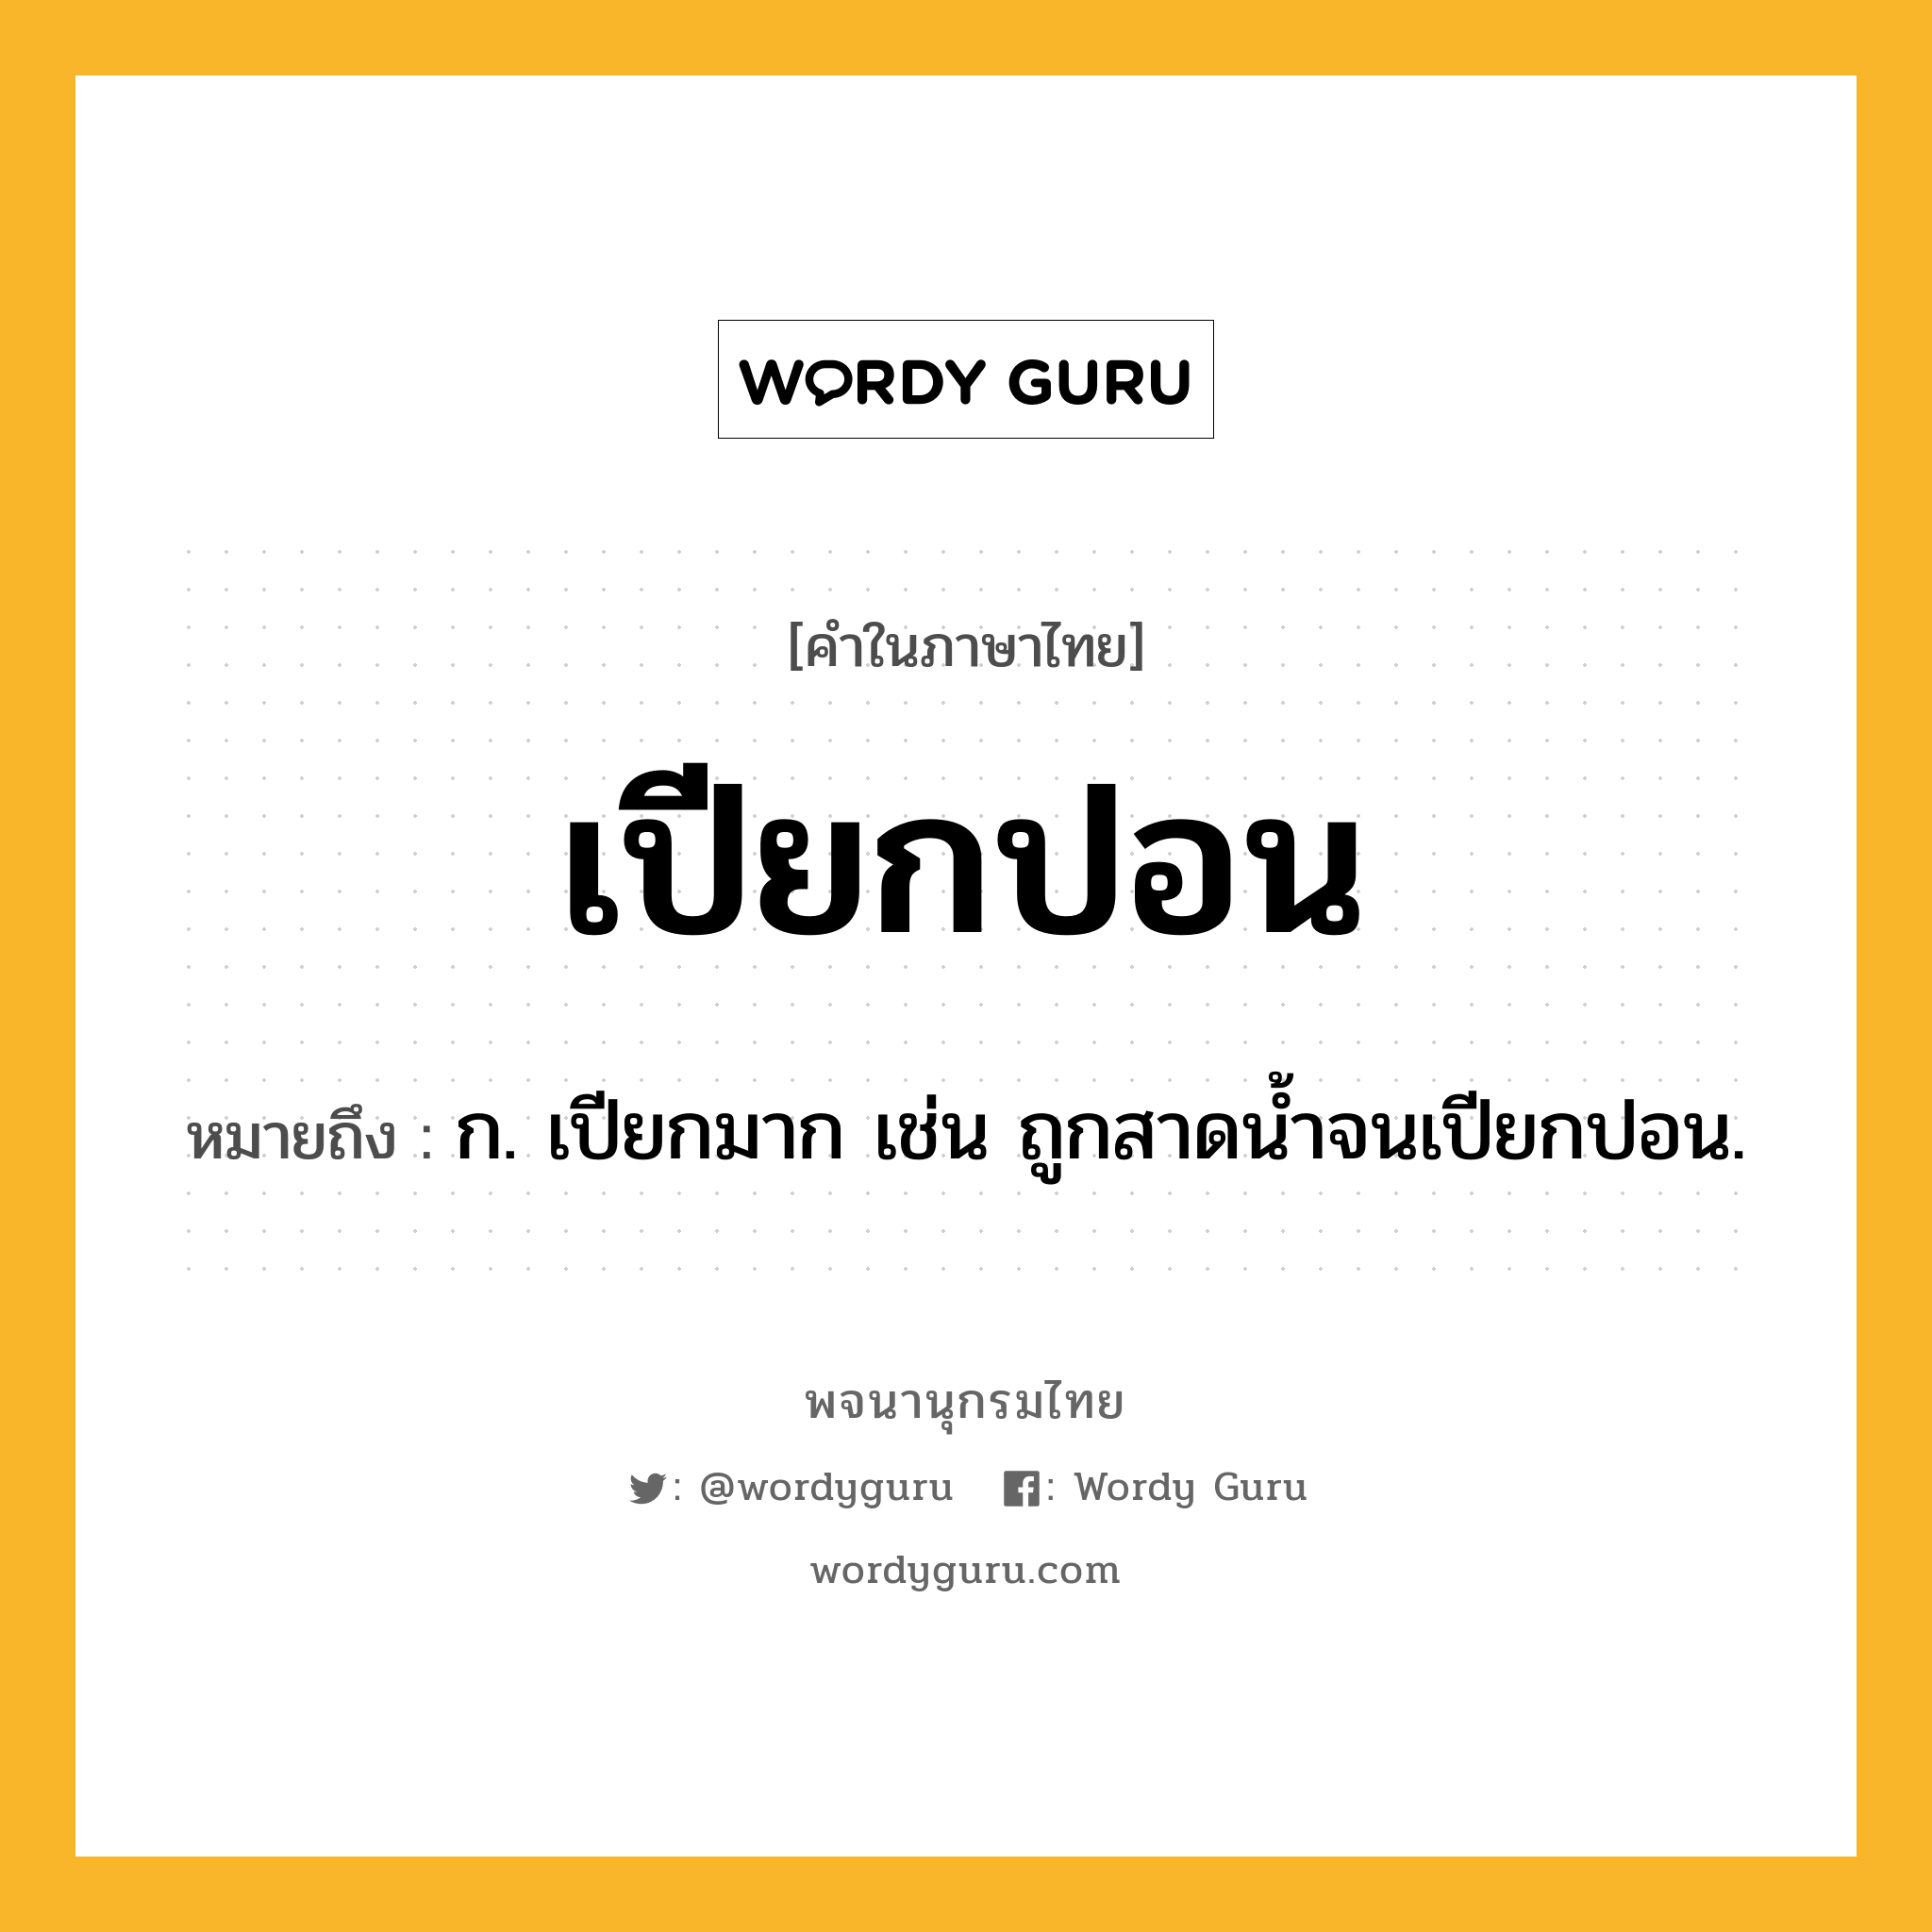 เปียกปอน หมายถึงอะไร?, คำในภาษาไทย เปียกปอน หมายถึง ก. เปียกมาก เช่น ถูกสาดน้ำจนเปียกปอน.